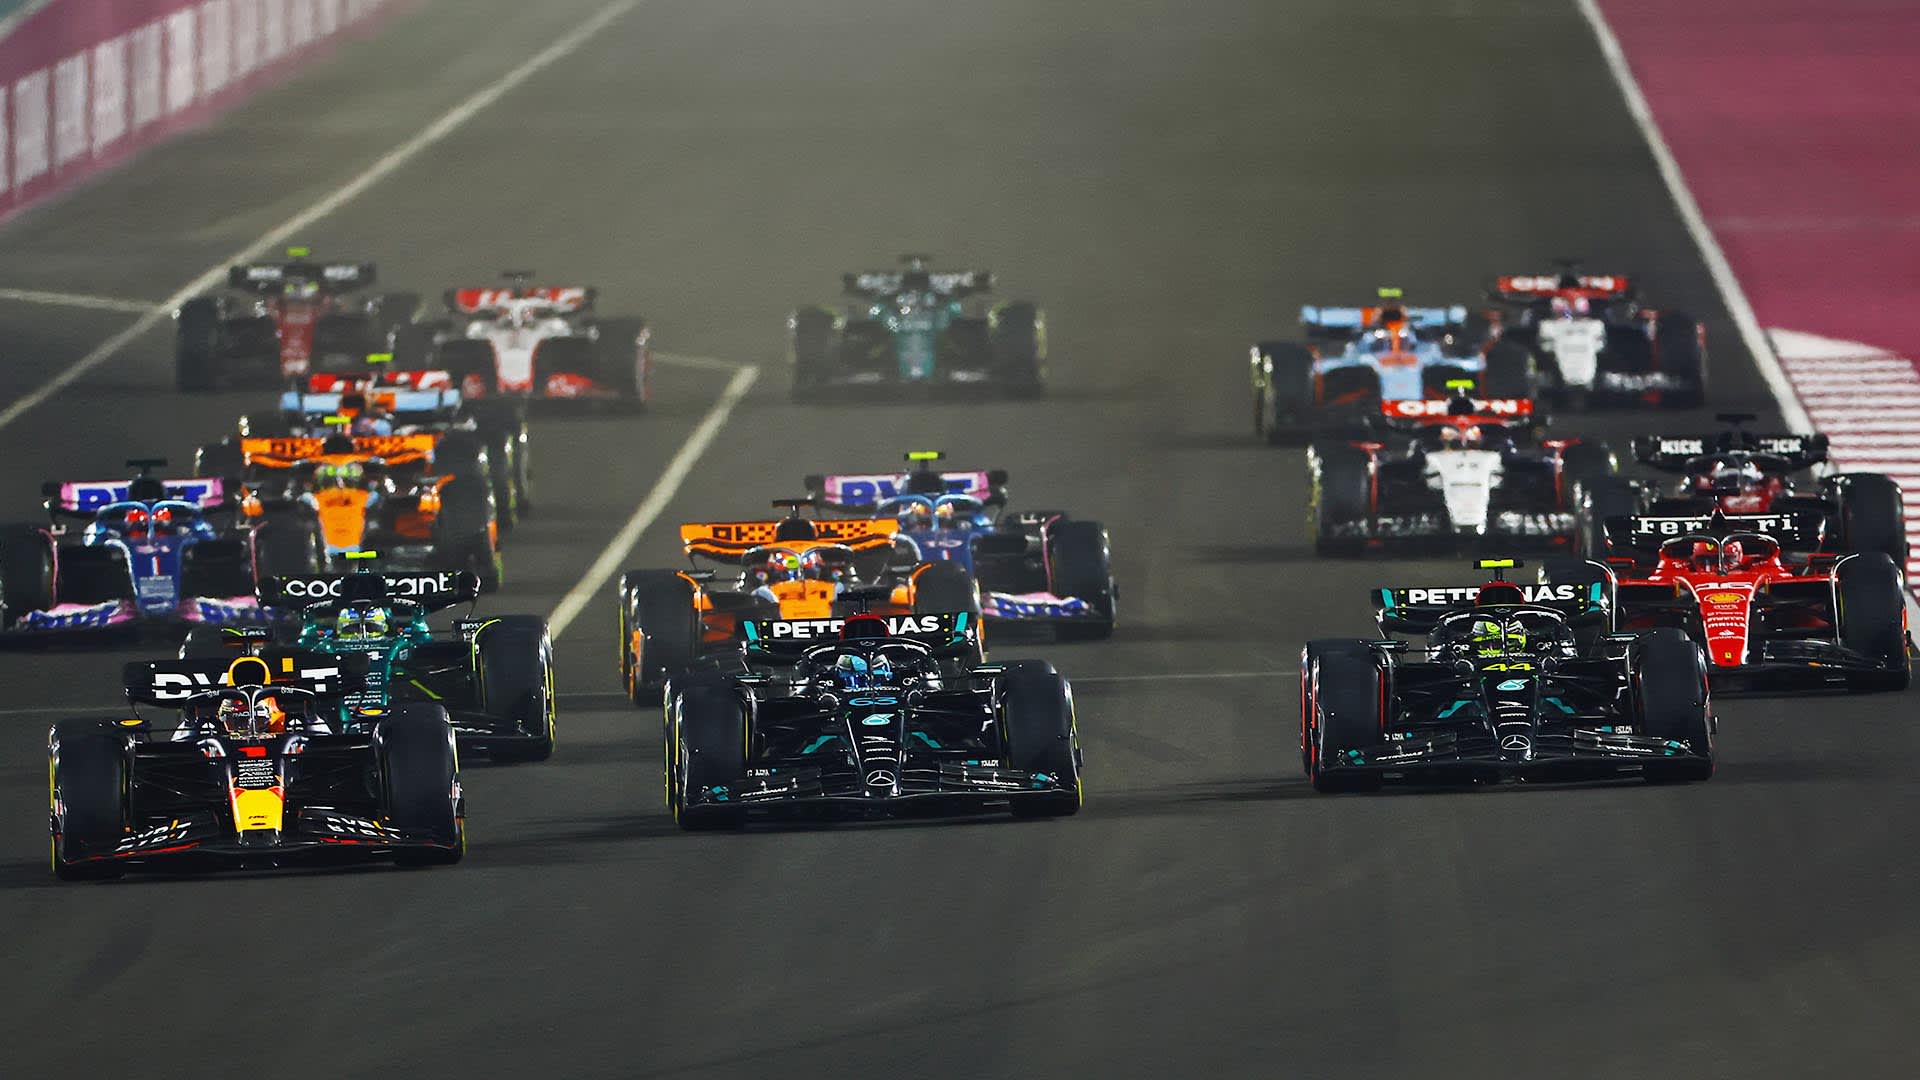 Qatar Grand Prix 2021